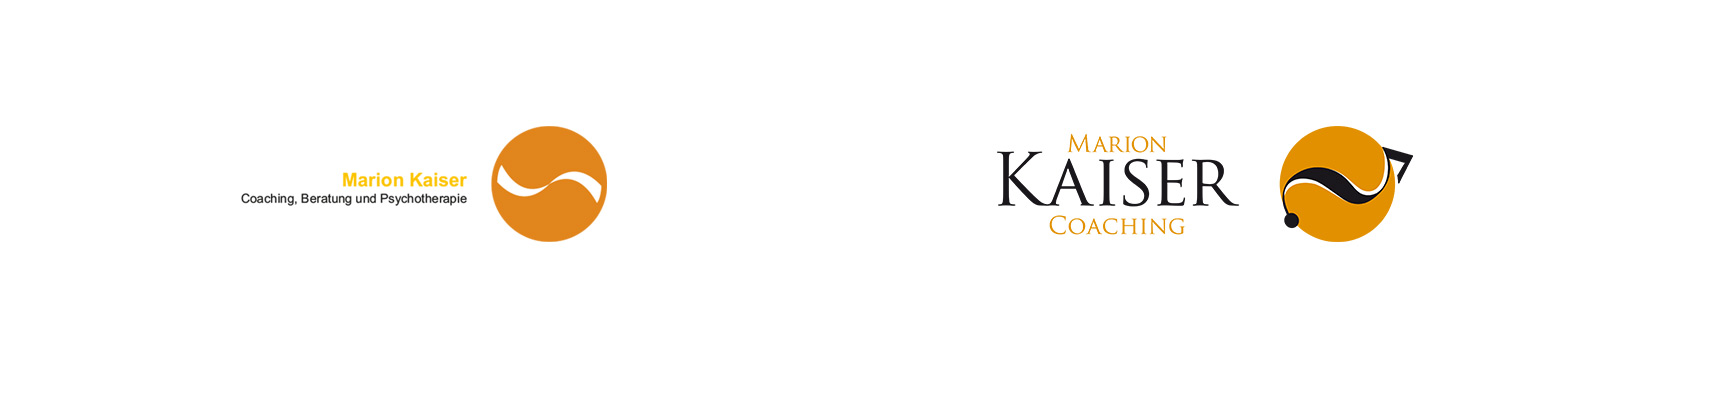 Logo alt und neu (dégagée) – Marion Kaiser Coaching